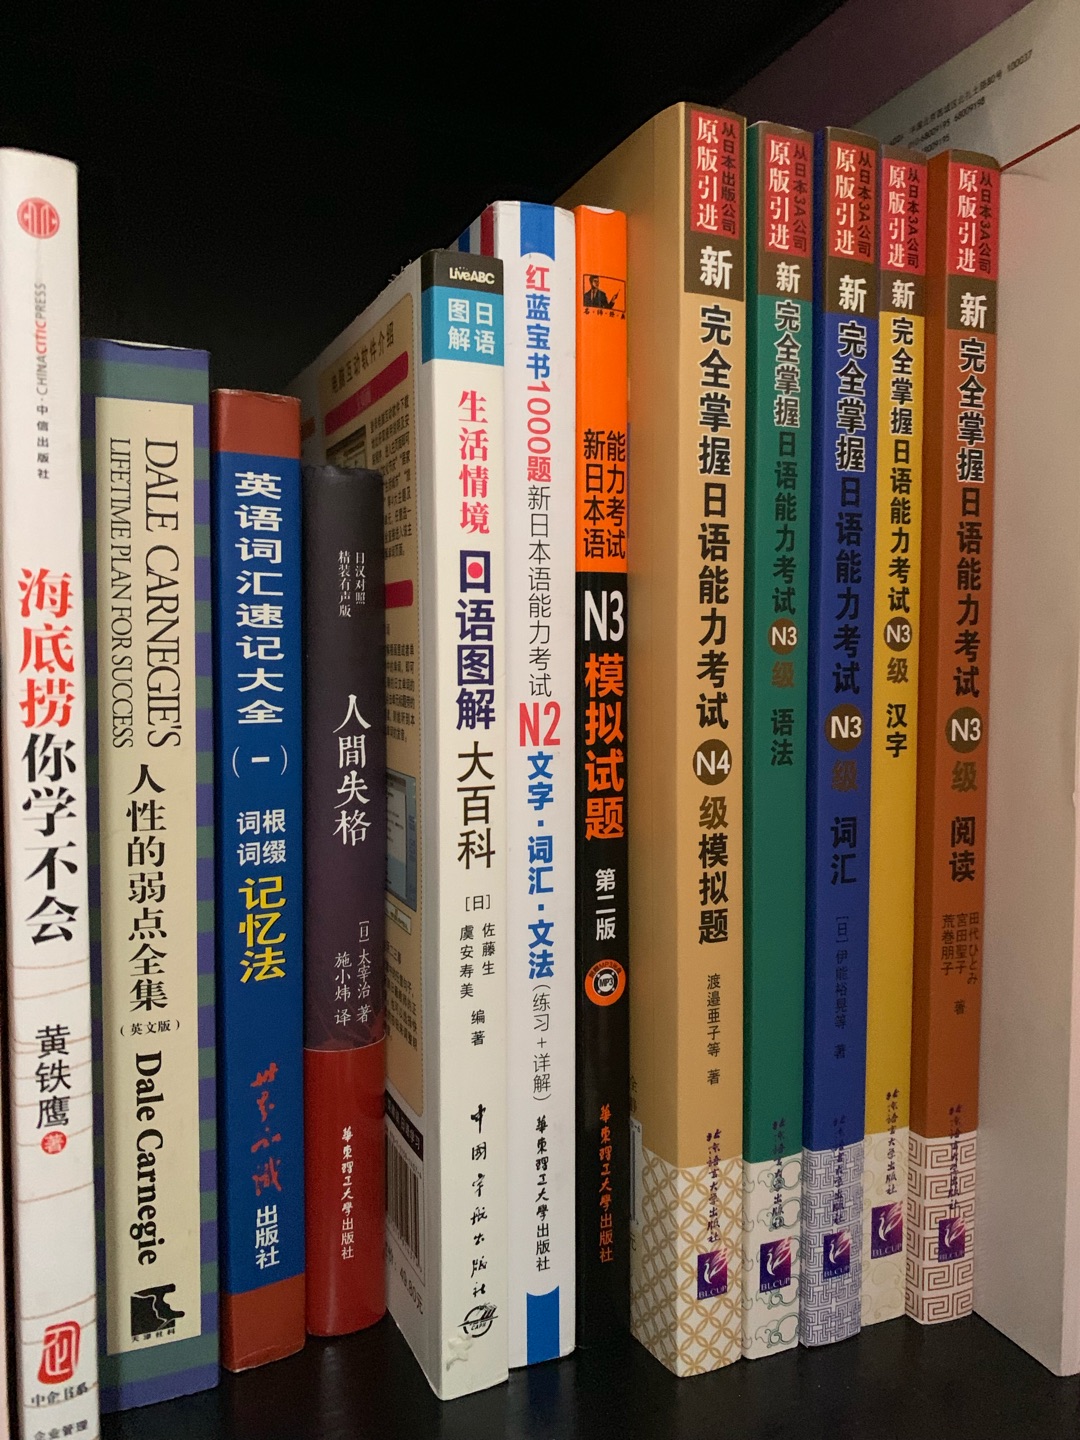 日语书已备齐，等待开始学习。学习是枯燥的，还好比较感兴趣，没有太大压力